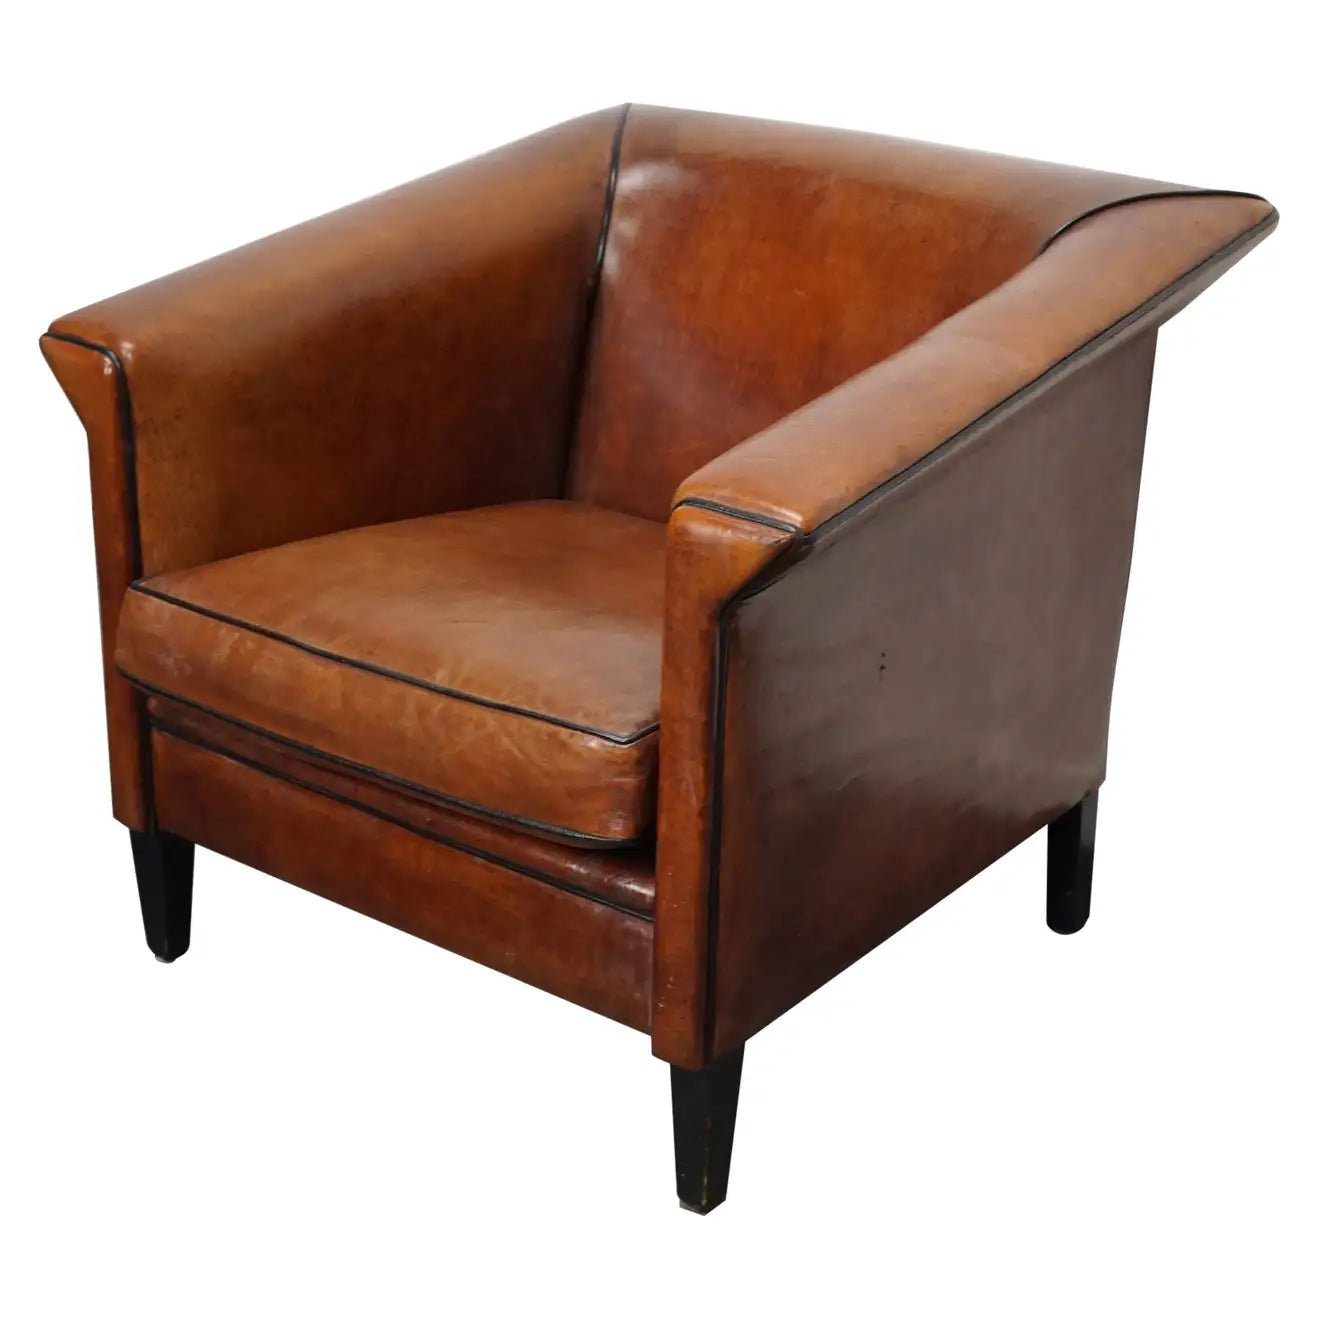 Vintage Dutch Cognac Colored Leather Club Chair Art Deco Style